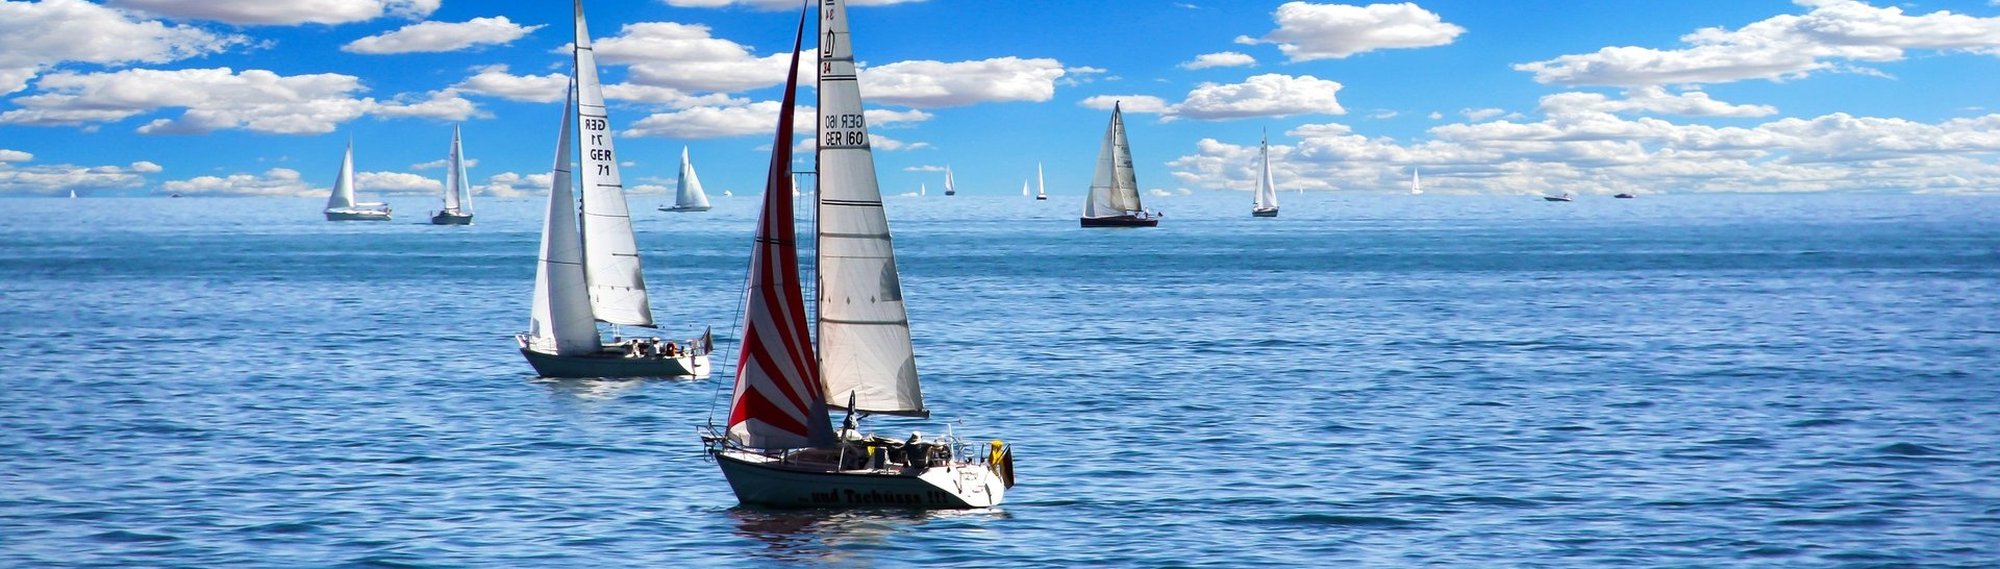 Afiliada a la FAY Federación Argentina de Yachting